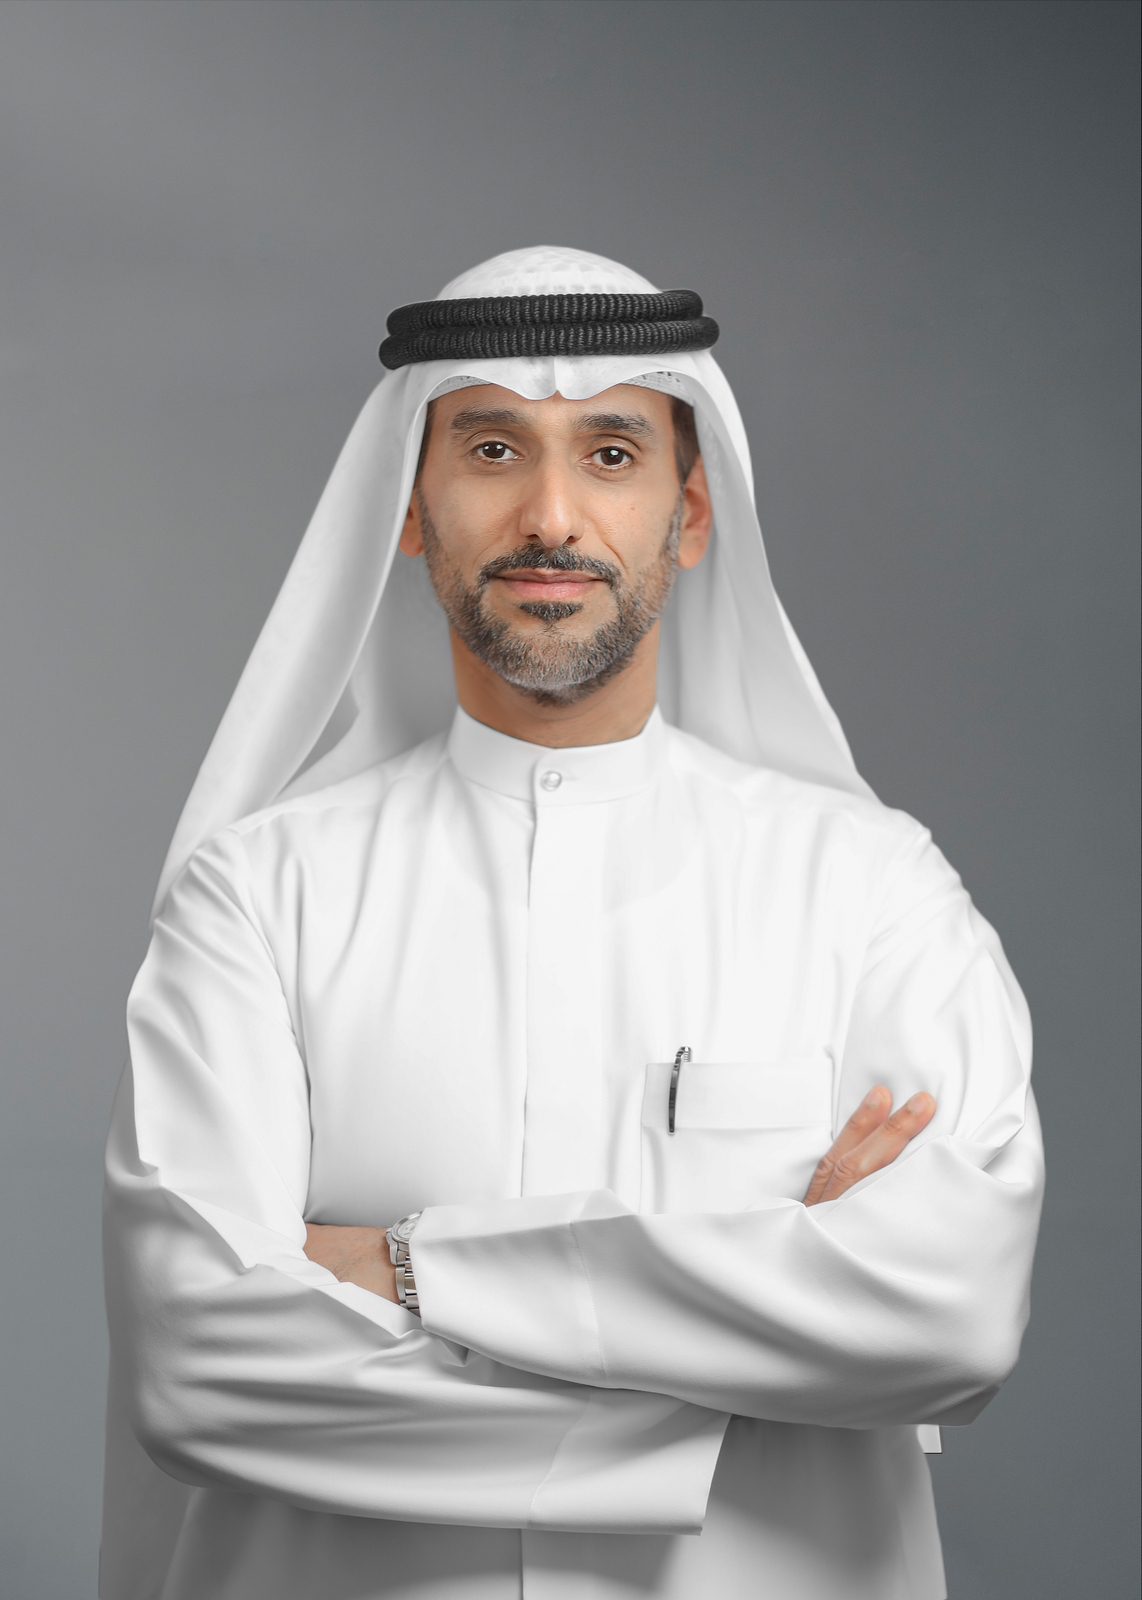 H.E. Saif Mohamed Al Midfa